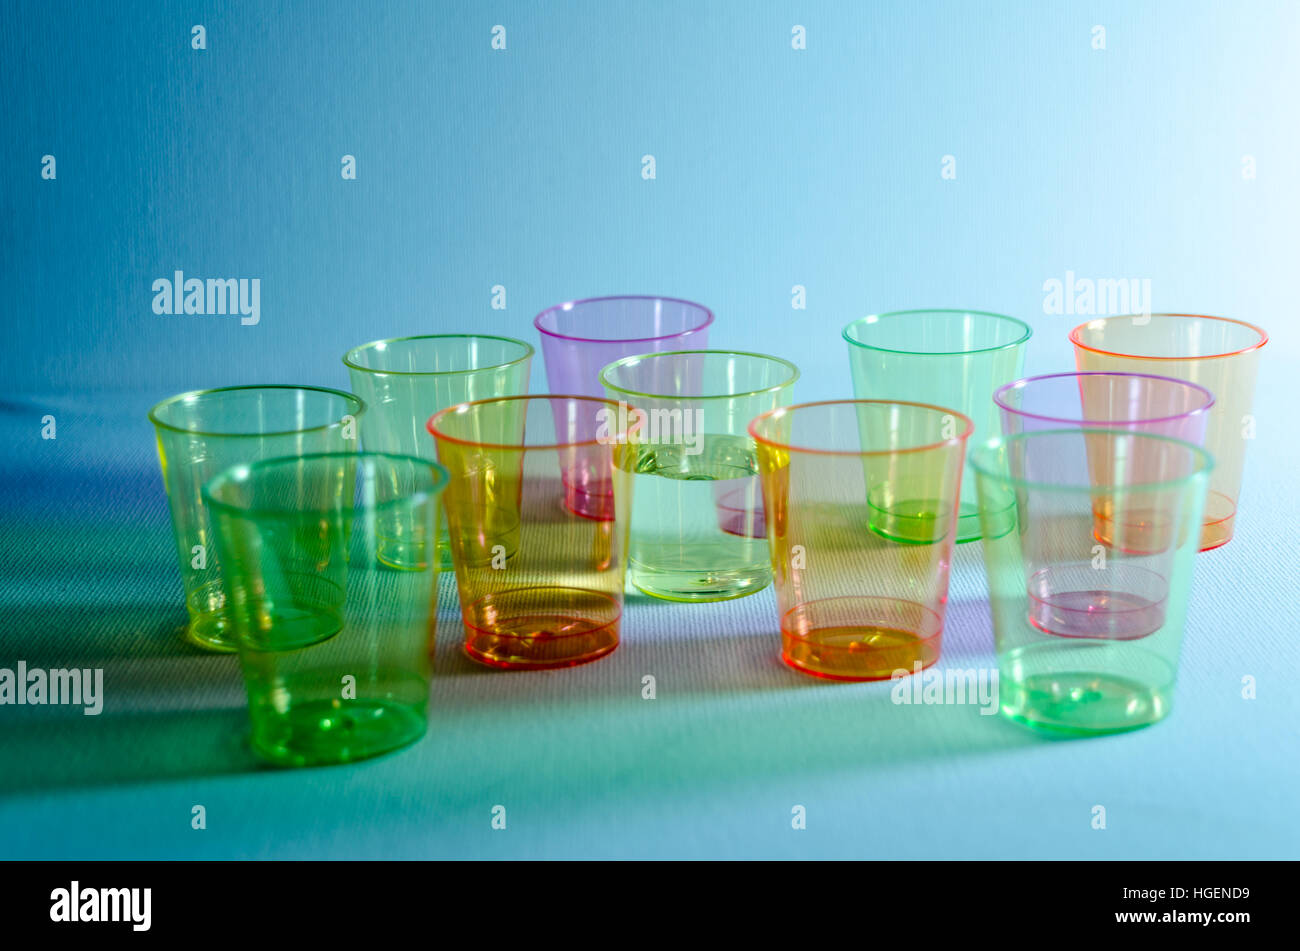 Une photographie de plastique multicolore 'Shot' Conteneurs, illuminé par l'éclairage bleu Banque D'Images